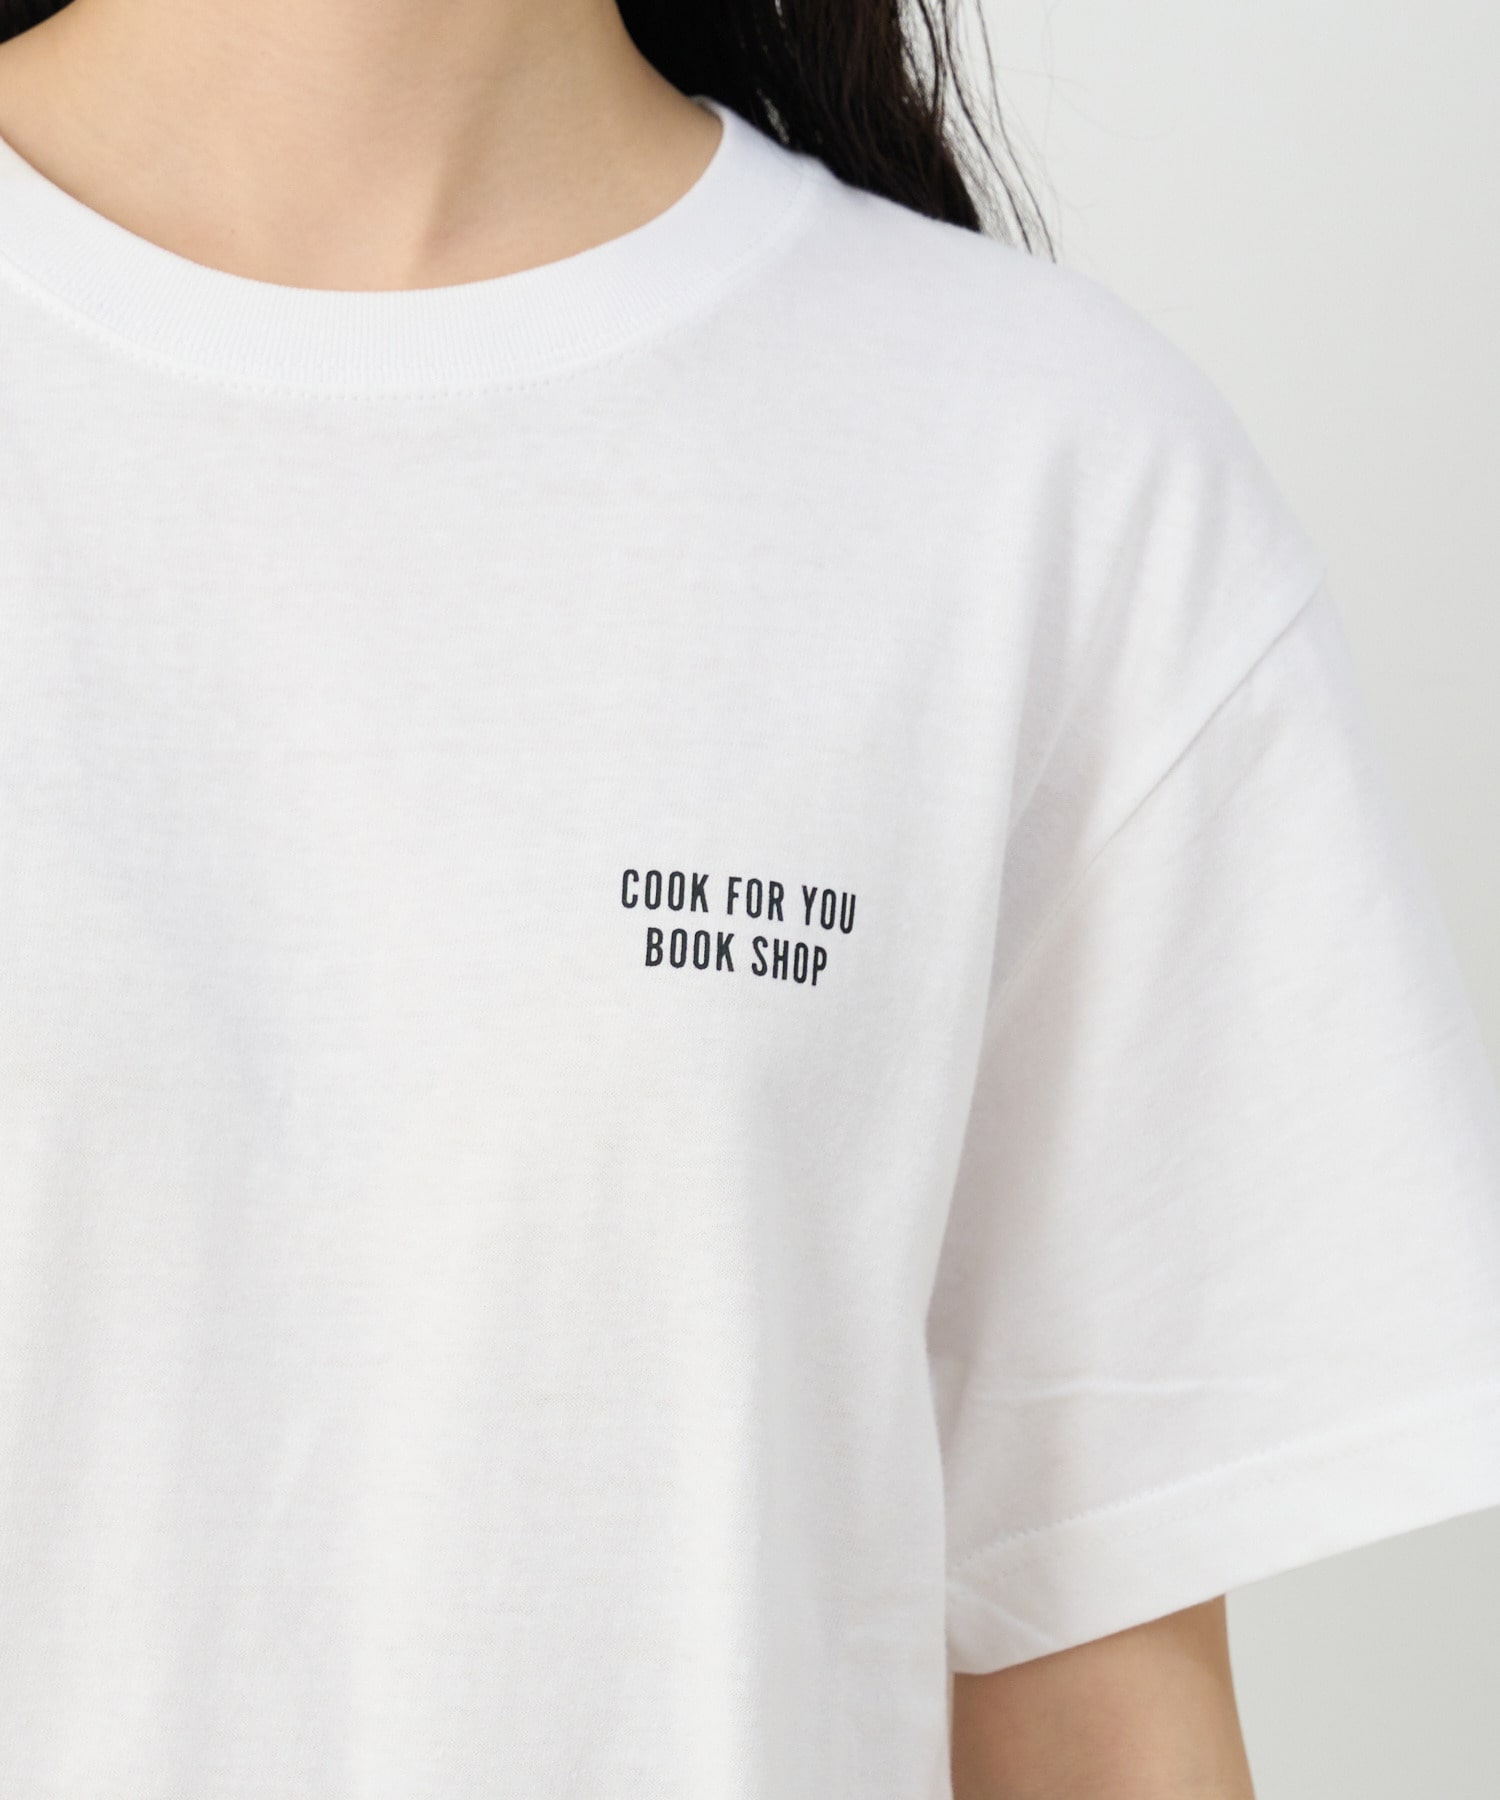 【congés payés】Bob FoundationコラボTシャツ 詳細画像 チャコールグレー 32